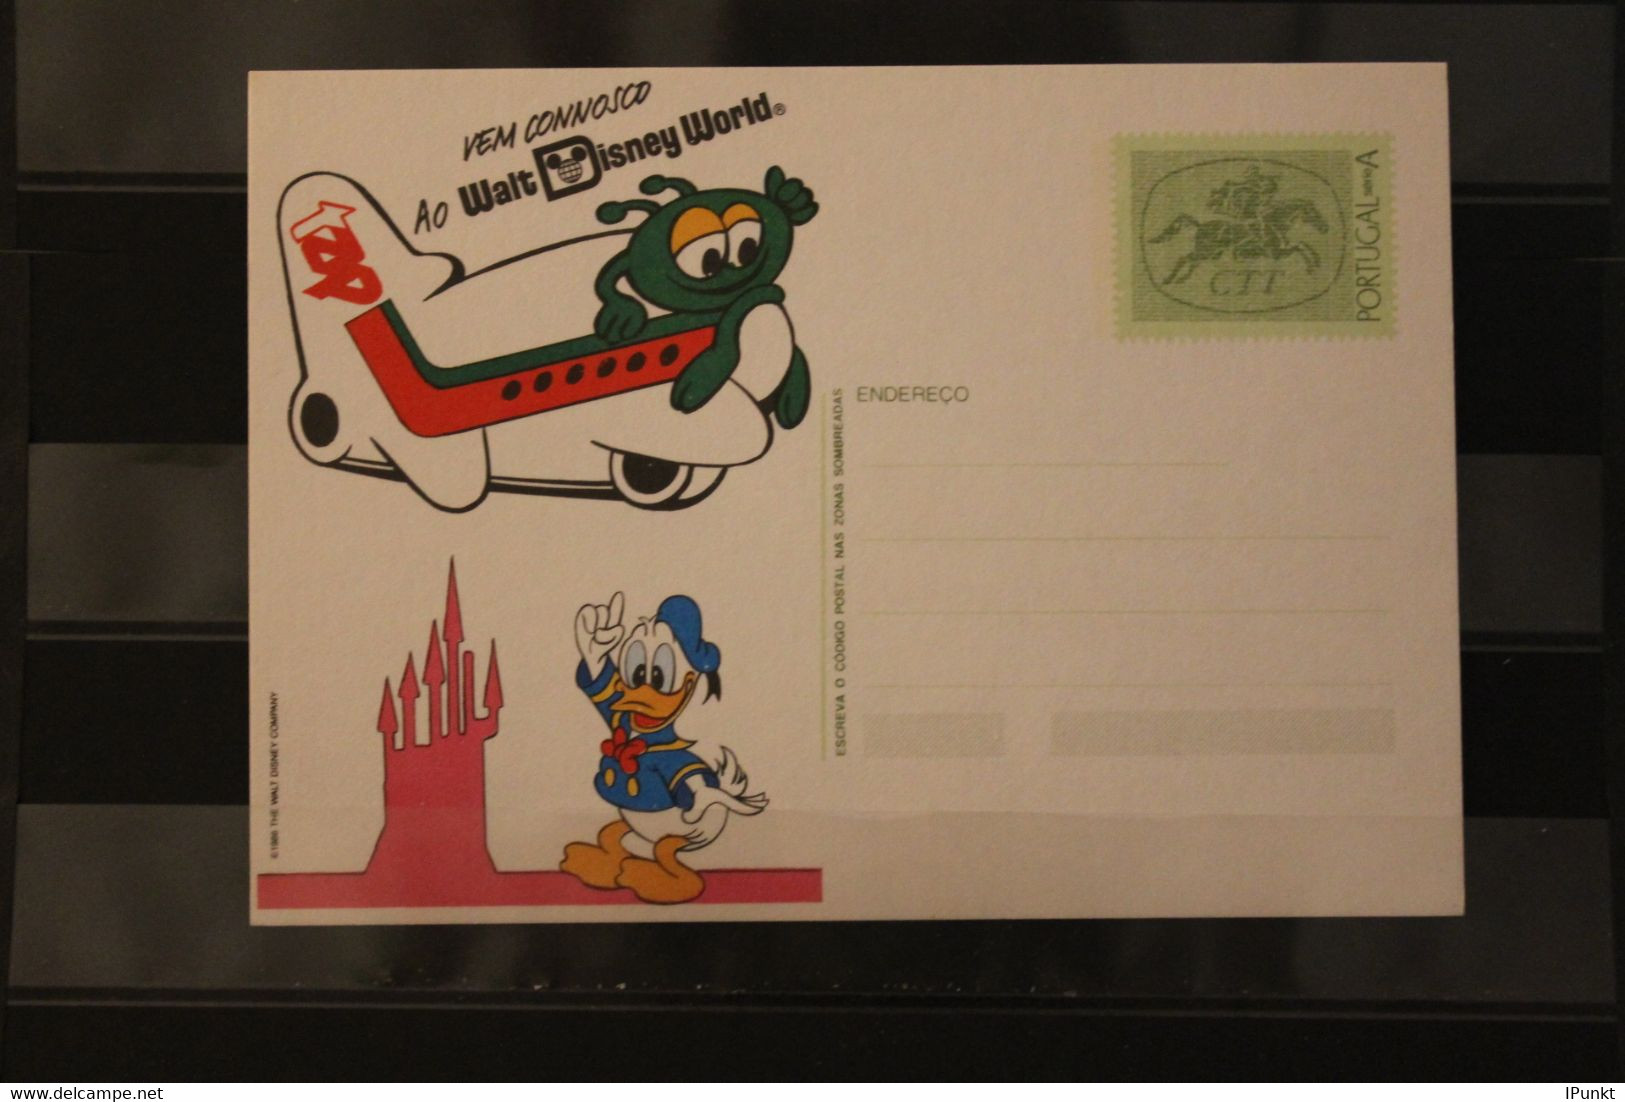 Portugal, Ganzsache Walt Disney Micky Mouse 1986, ungebraucht